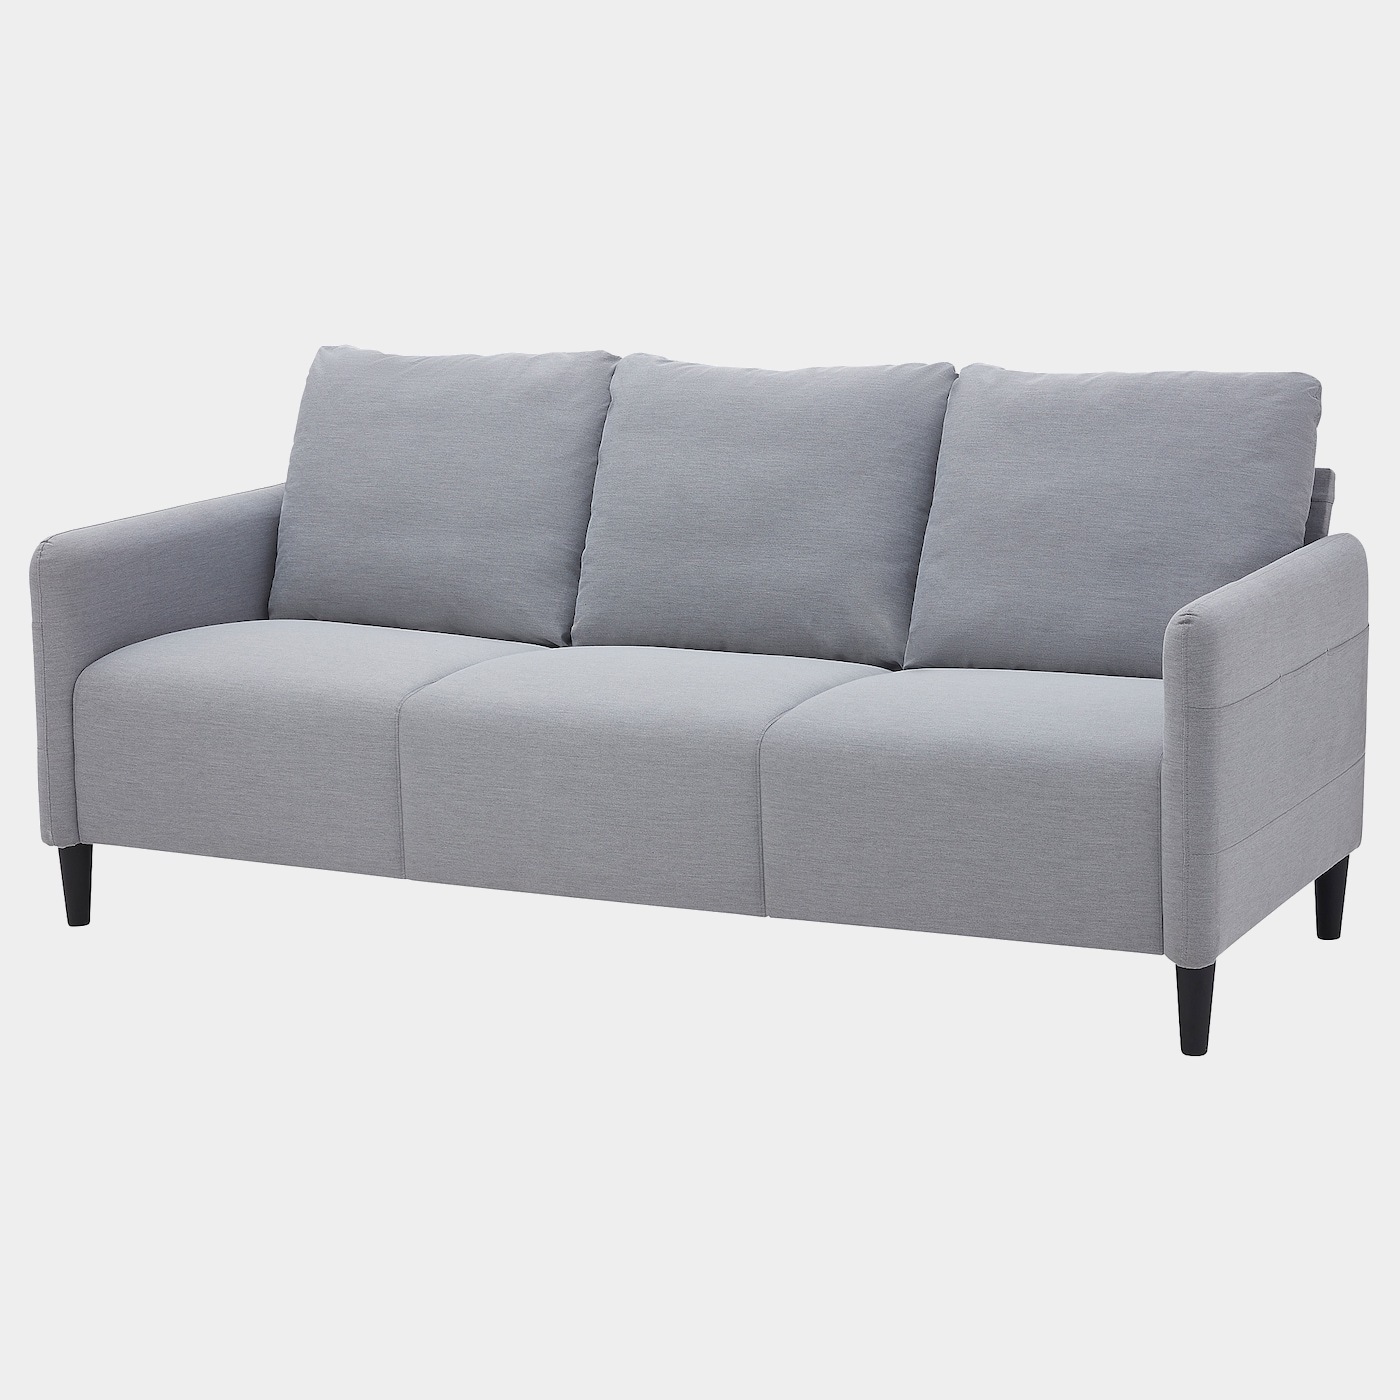 ANGERSBY 3er-Sofa  -  - Möbel Ideen für dein Zuhause von Home Trends. Möbel Trends von Social Media Influencer für dein Skandi Zuhause.